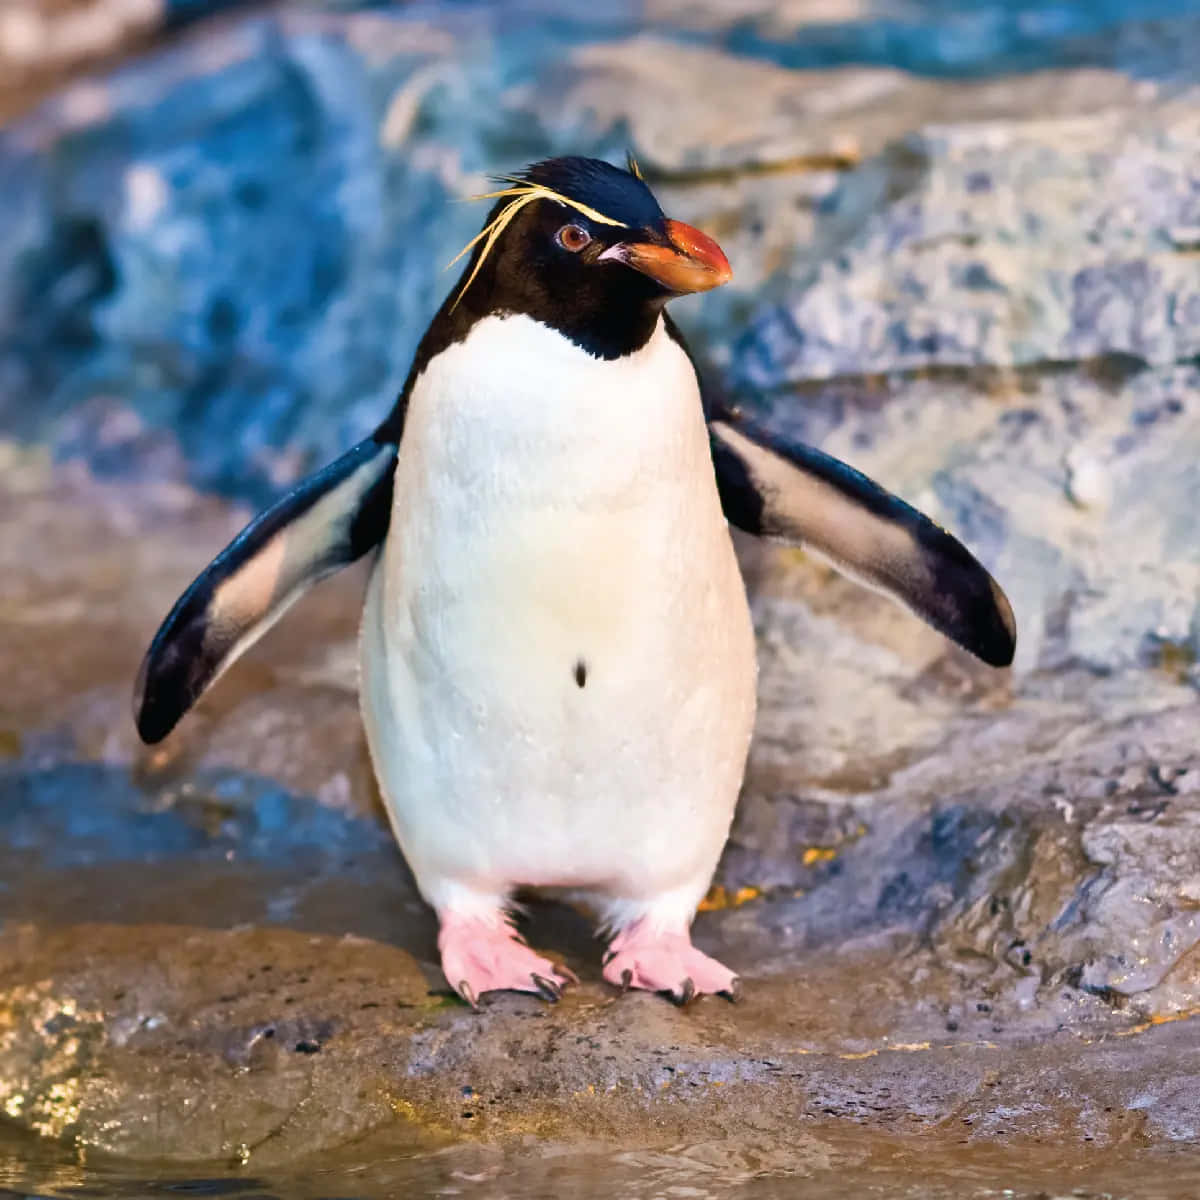 Umpequeno Pinguim Nada Graciosamente No Meio De Um Cardume De Peixes.